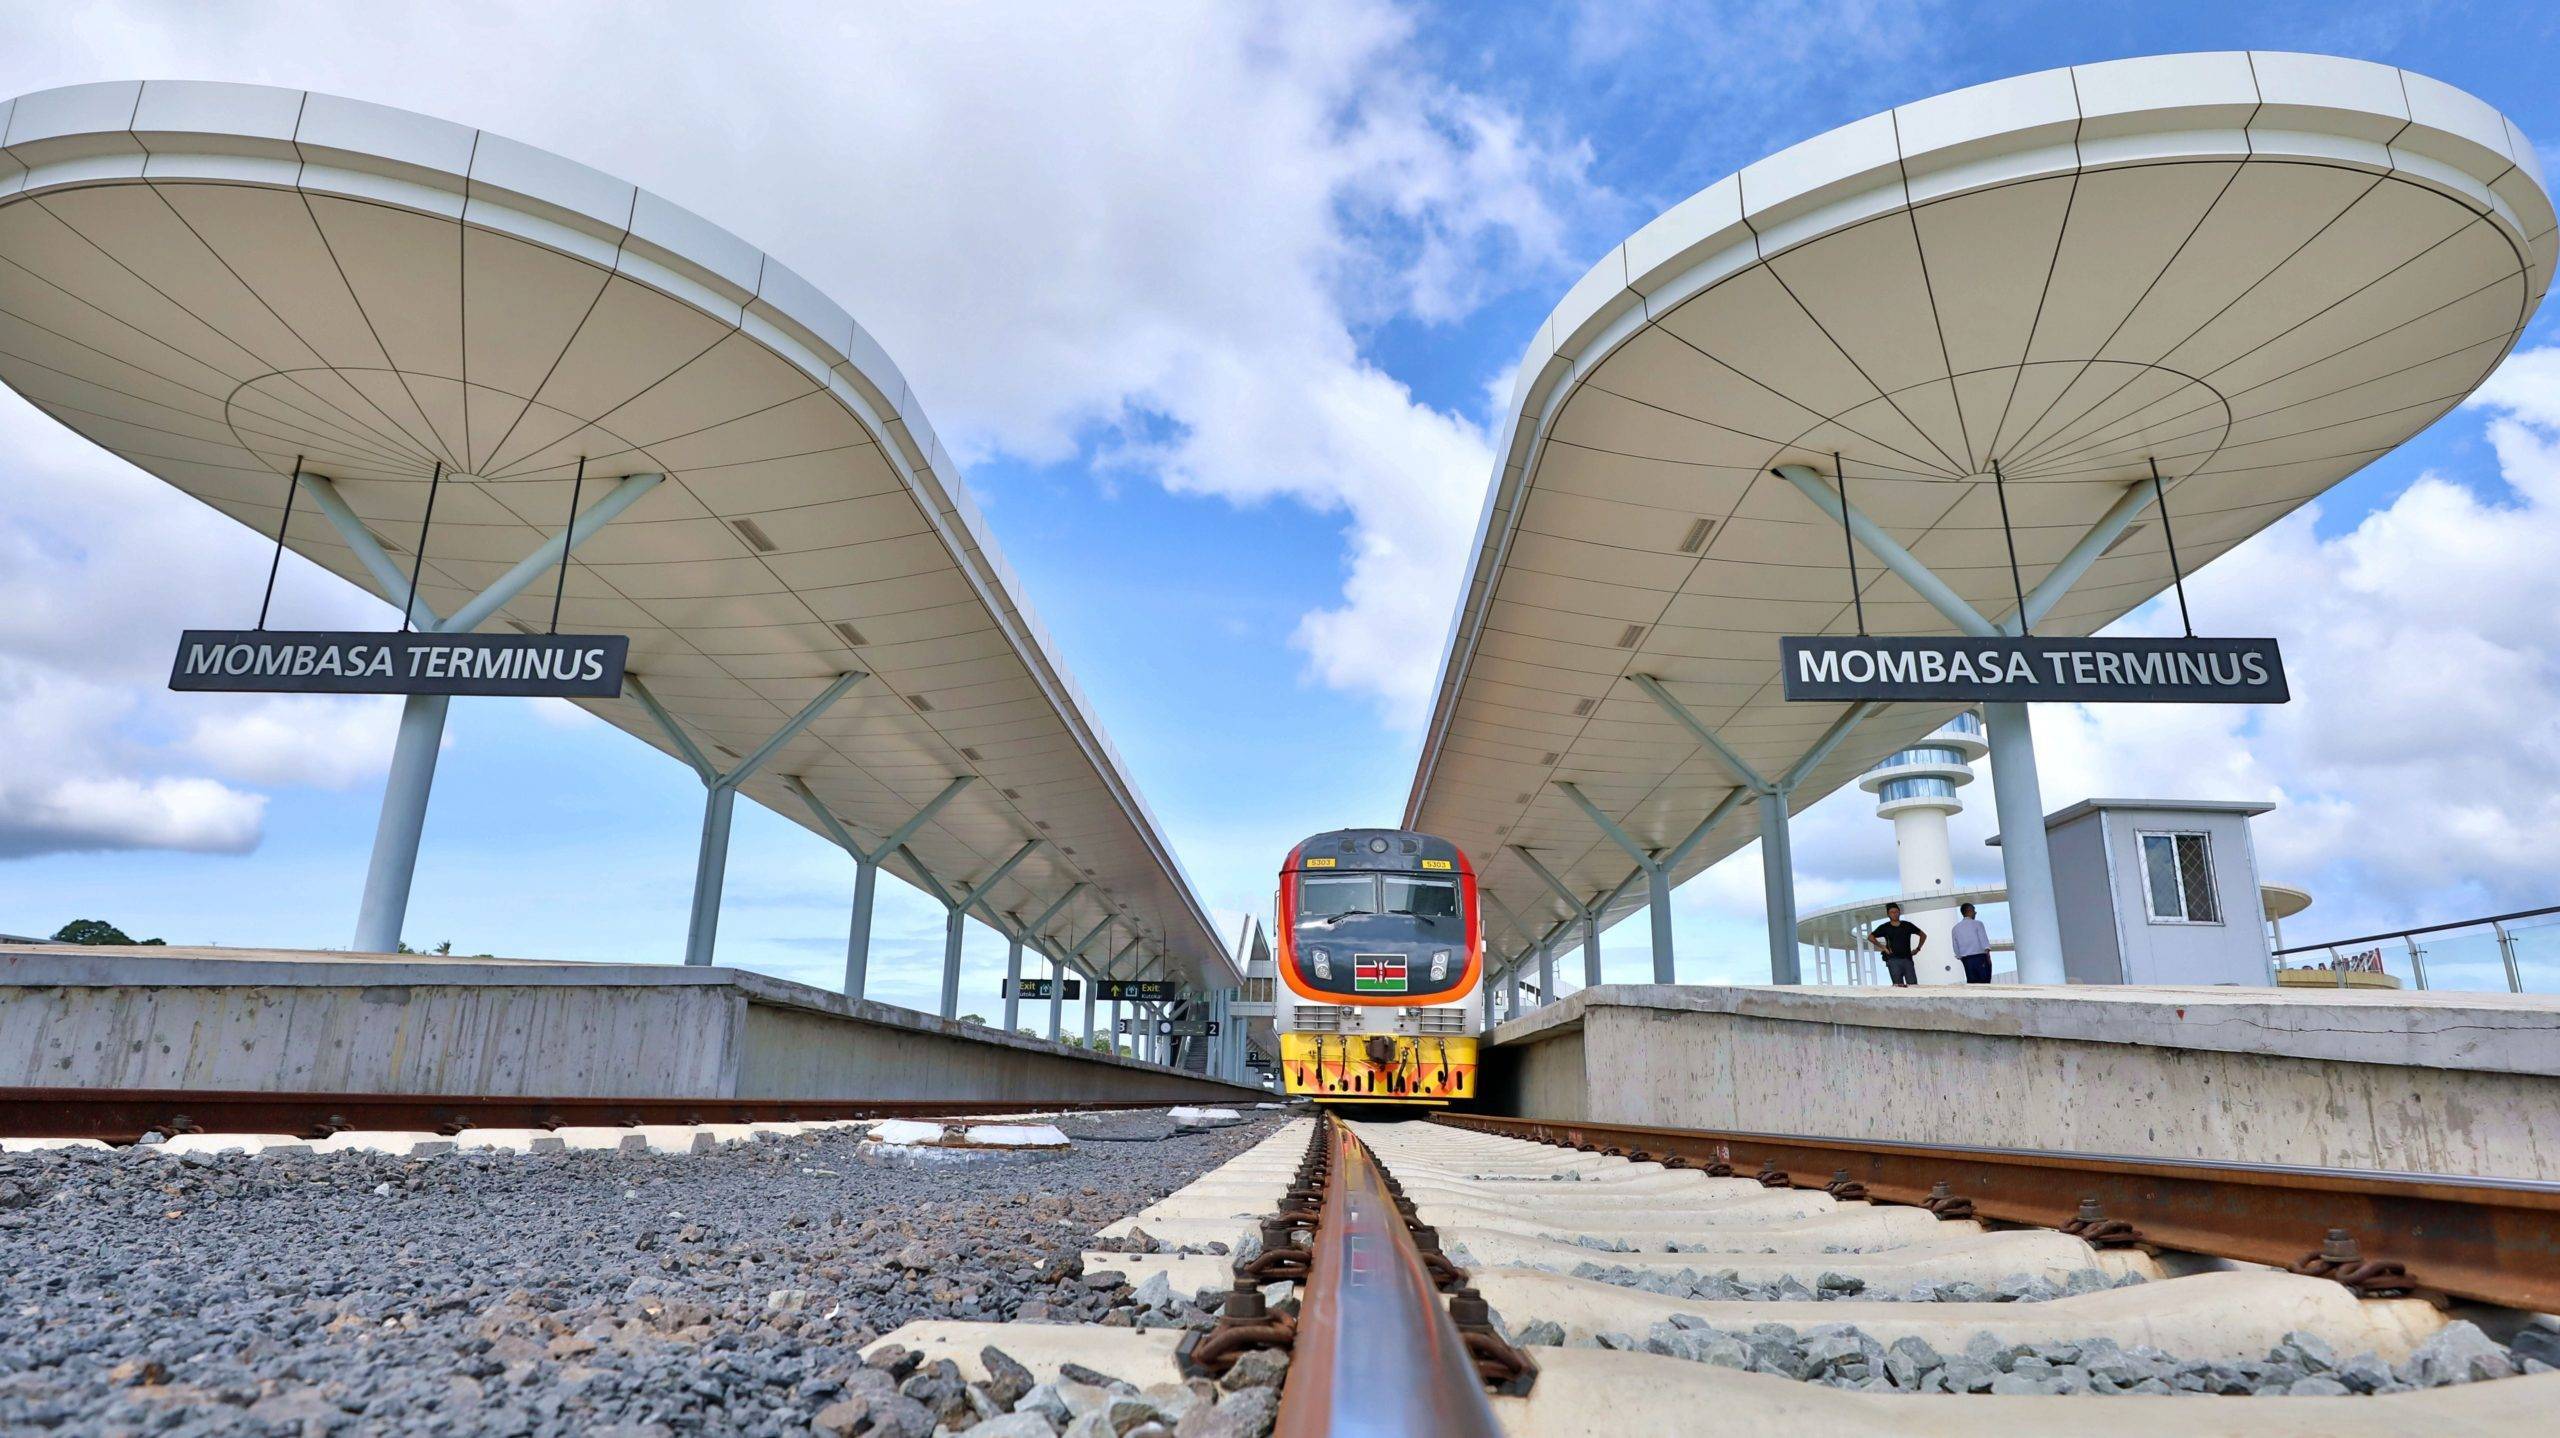 Les chemins de fer africains face au manque de subventions chinoises